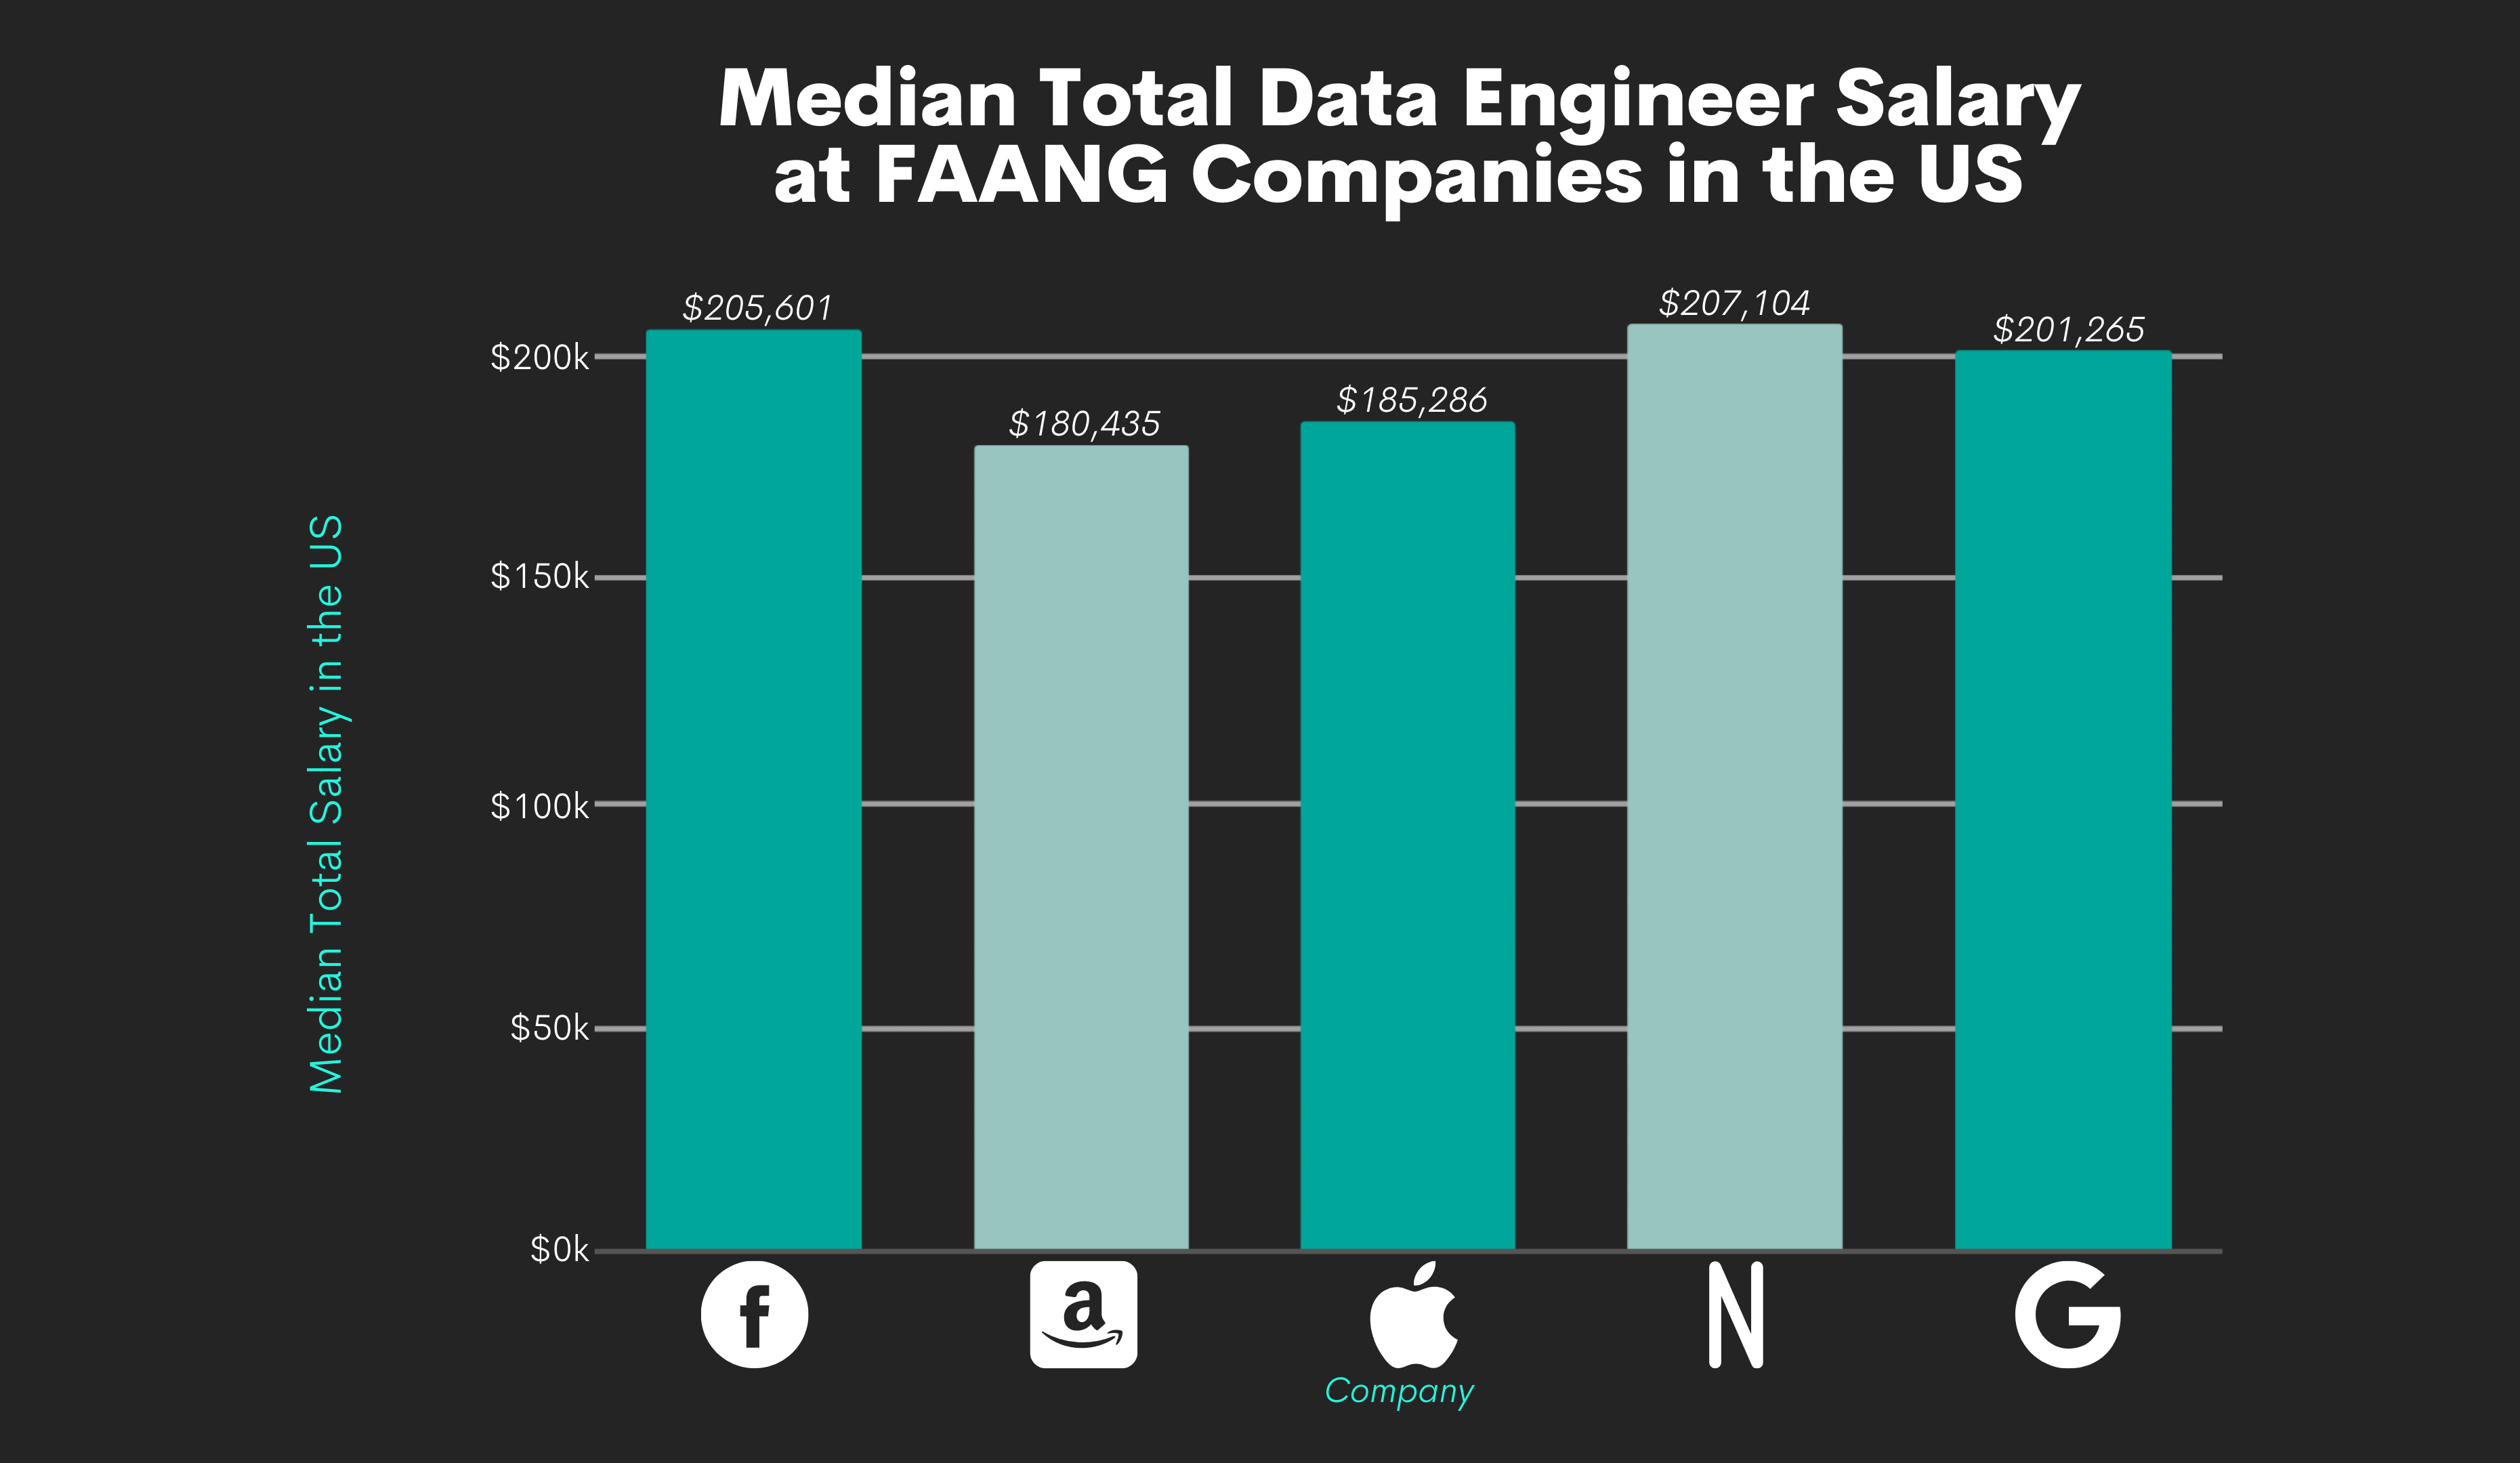 Data Engineer Salaries at FAANG Companies